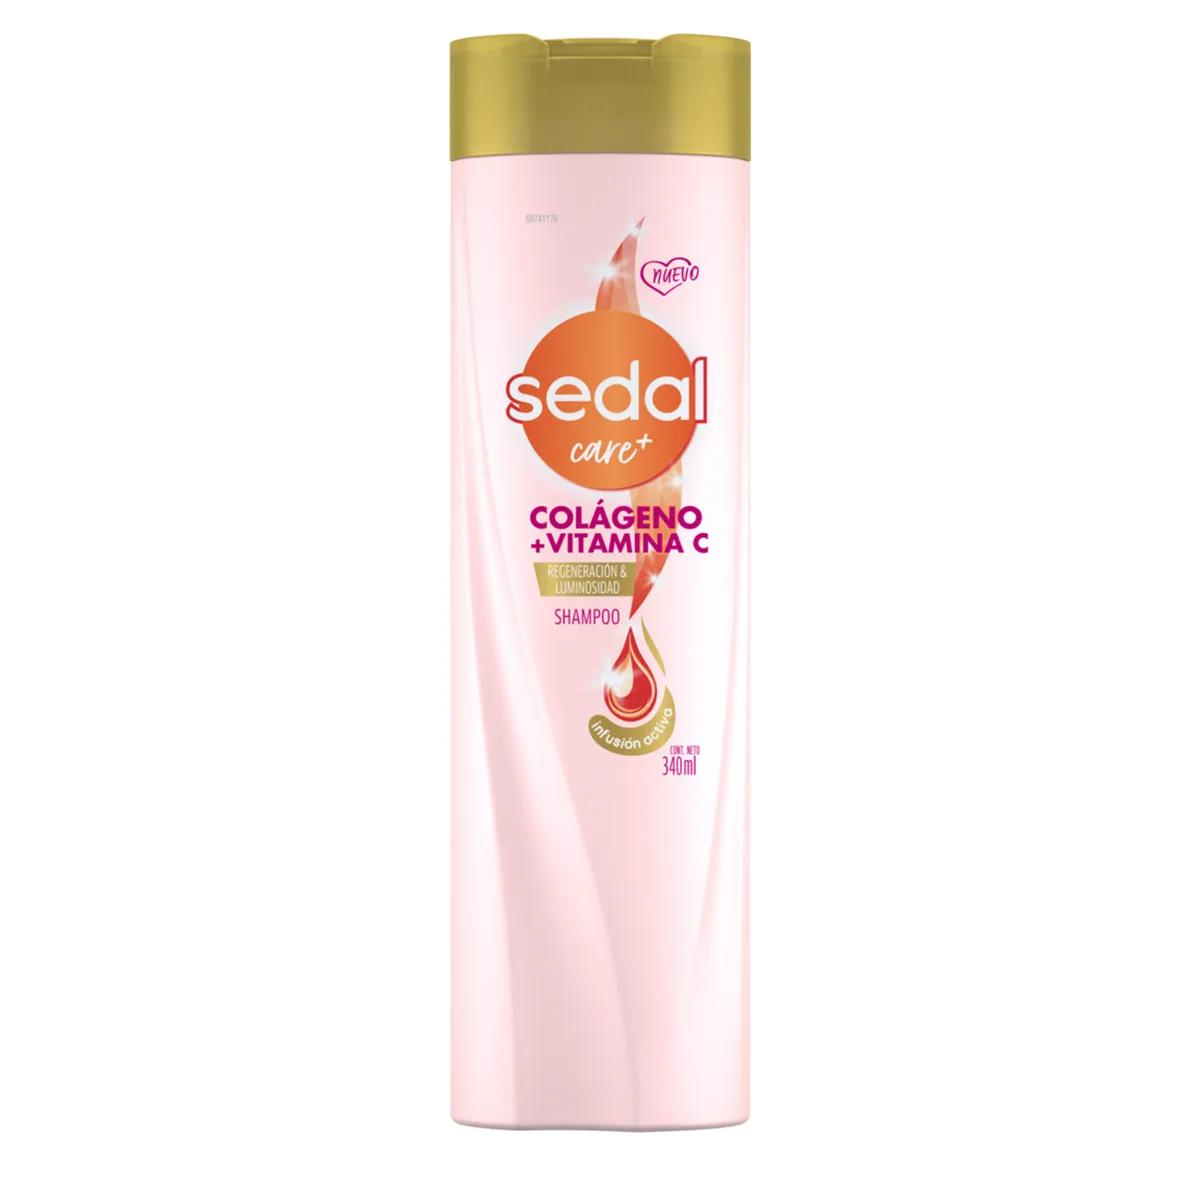 Shampoo Colageno y Vitamina C Sedal - 340ml